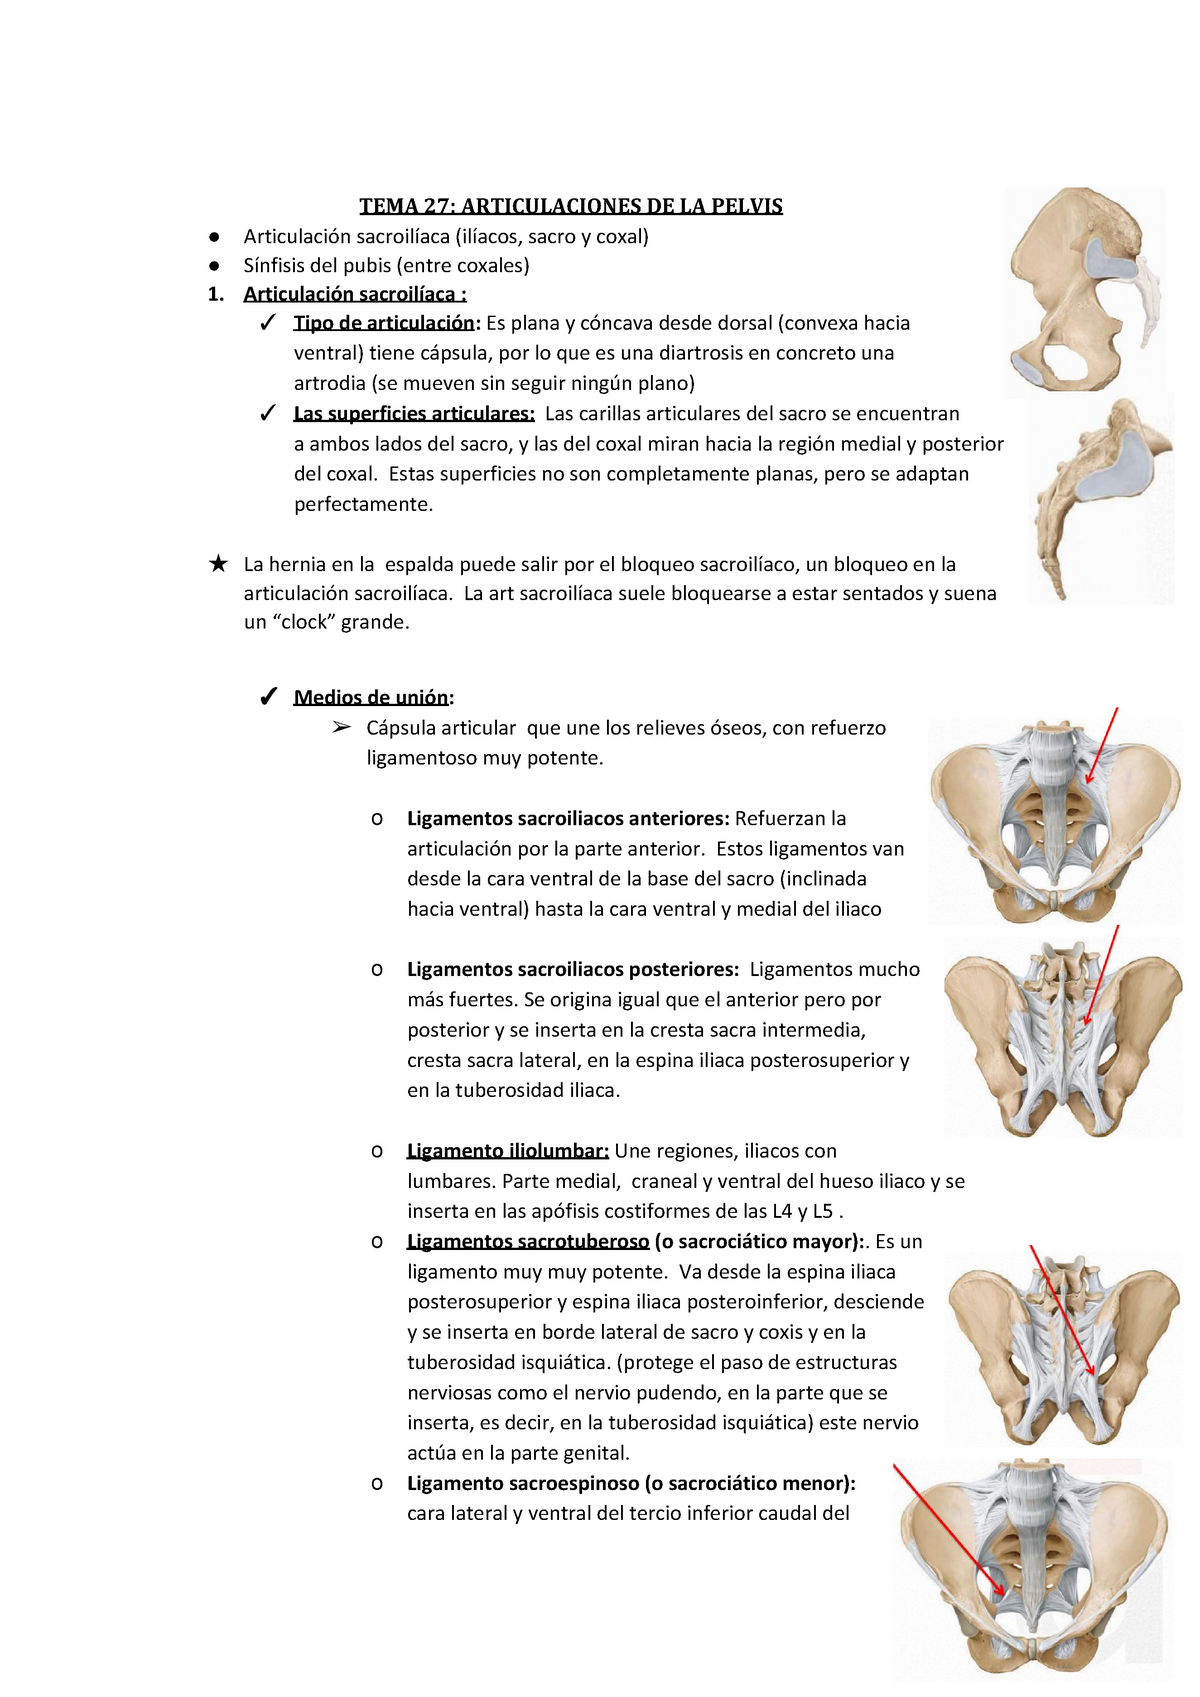 Articulaciones de la pelvis TEMA ARTICULACIONES DE LA PELVIS Articulación sacroilíaca